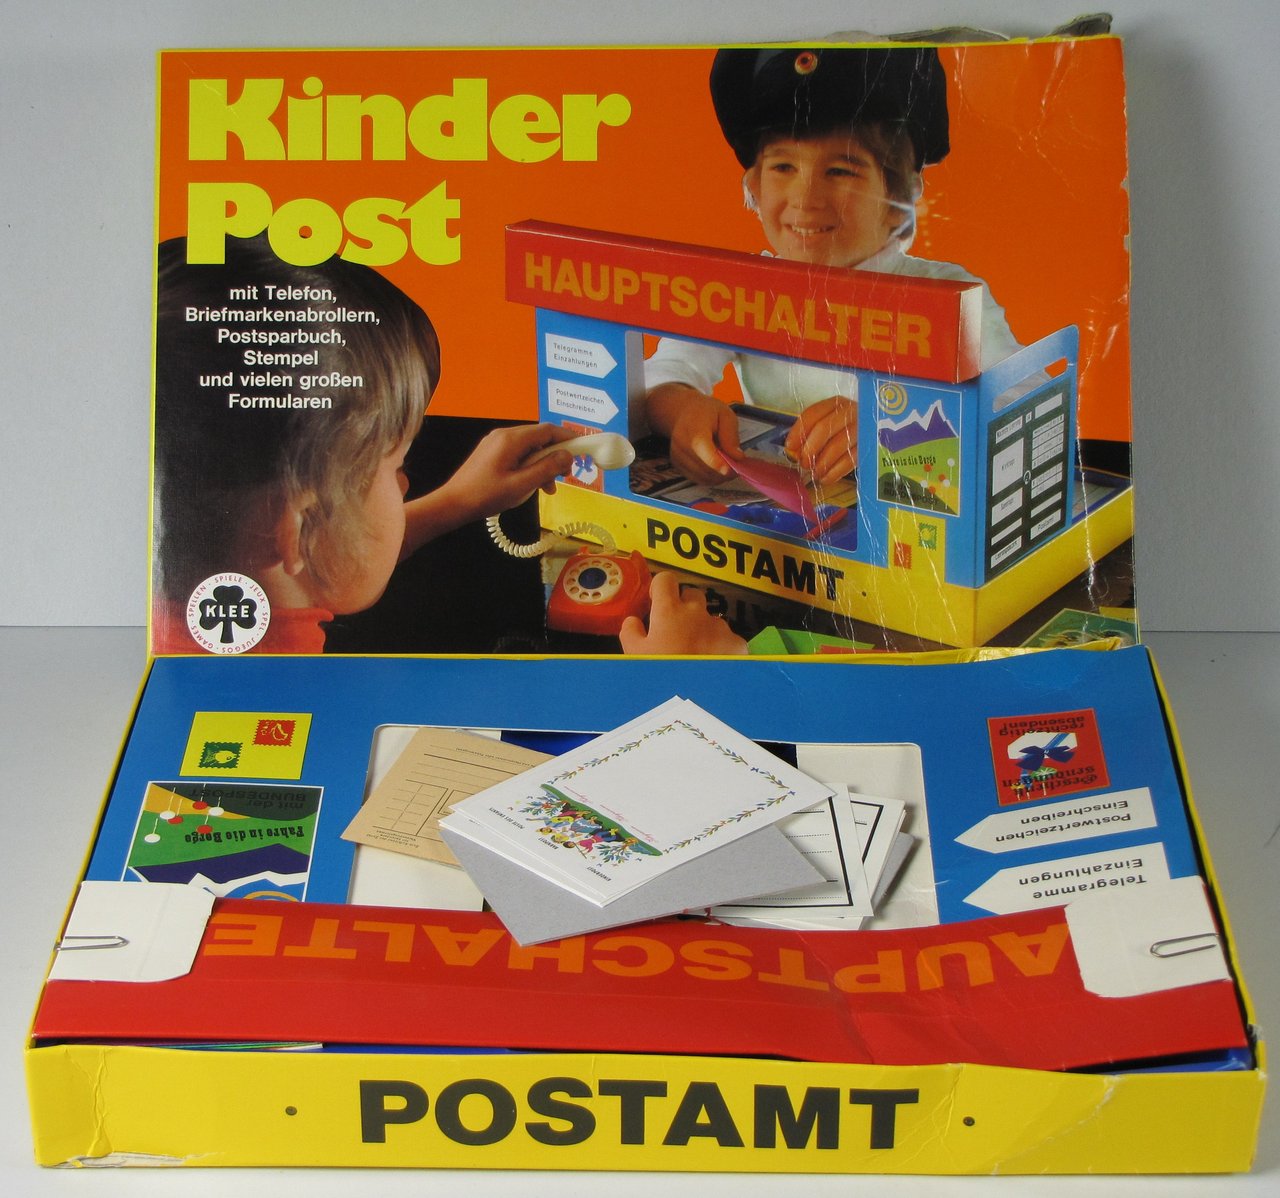 Kinder Post des deutschen Spieleverlags Klee Spiele